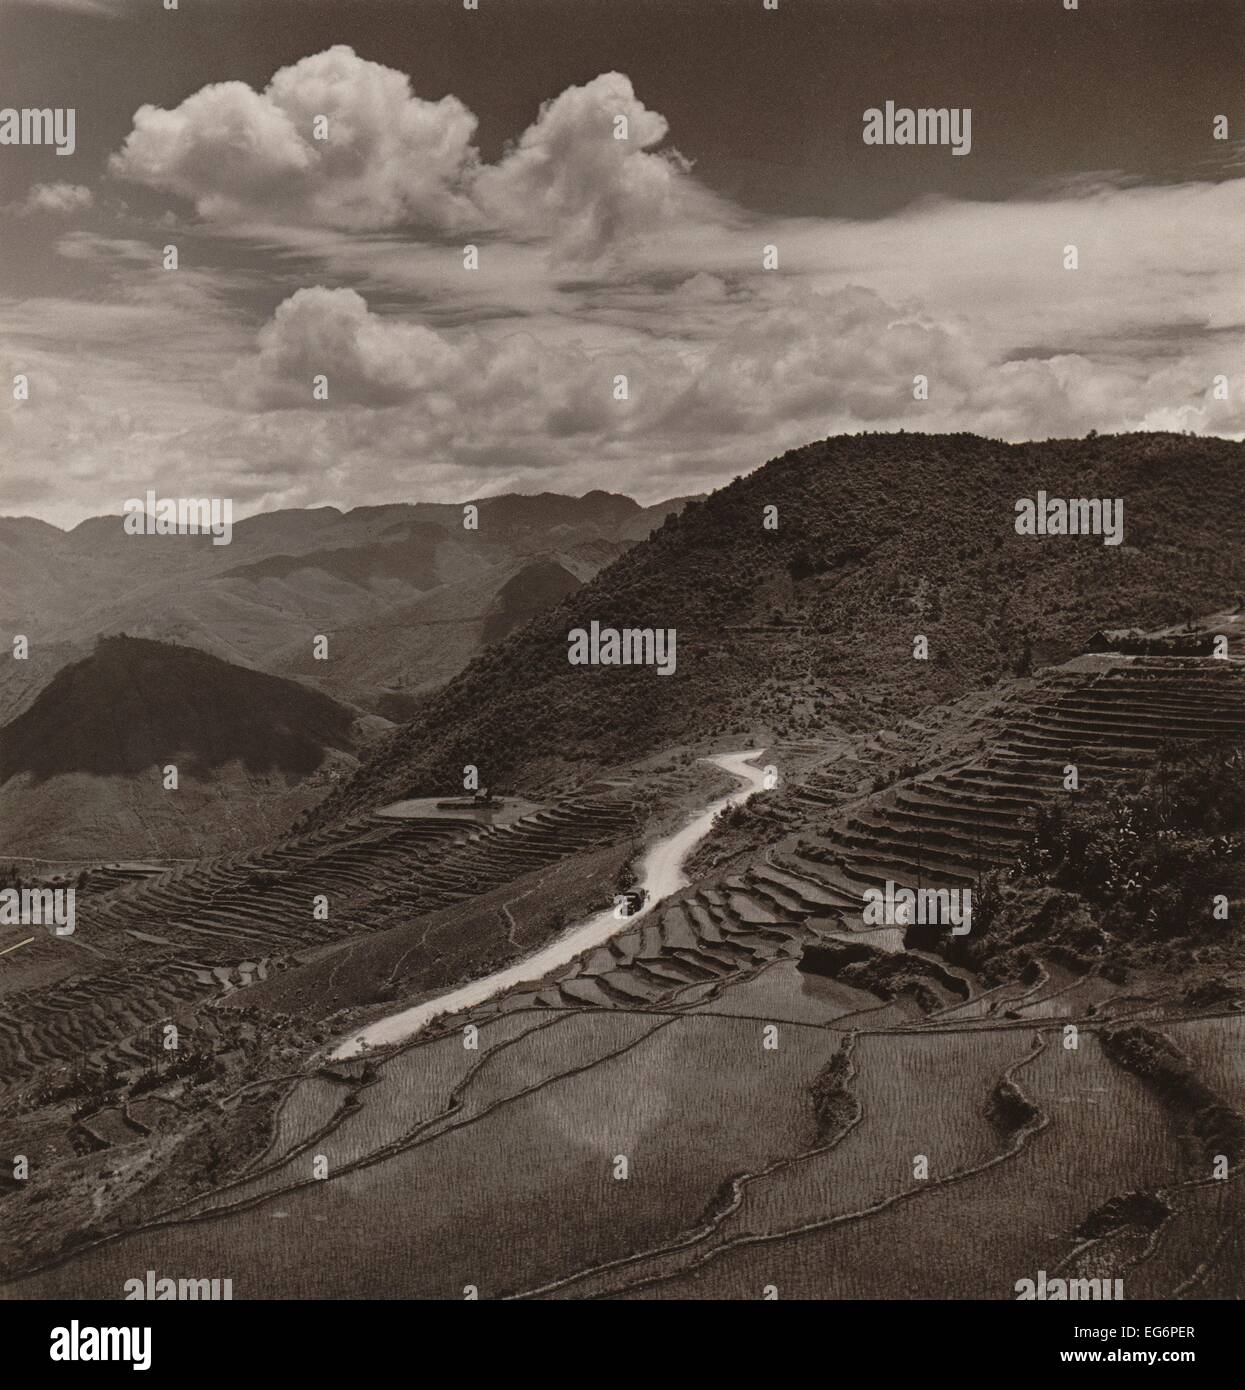 Campos de terrazas y calzada en una región montañosa de la provincia de Yunnan en China. Un vehículo militar de unidades en la distancia. Foto de stock